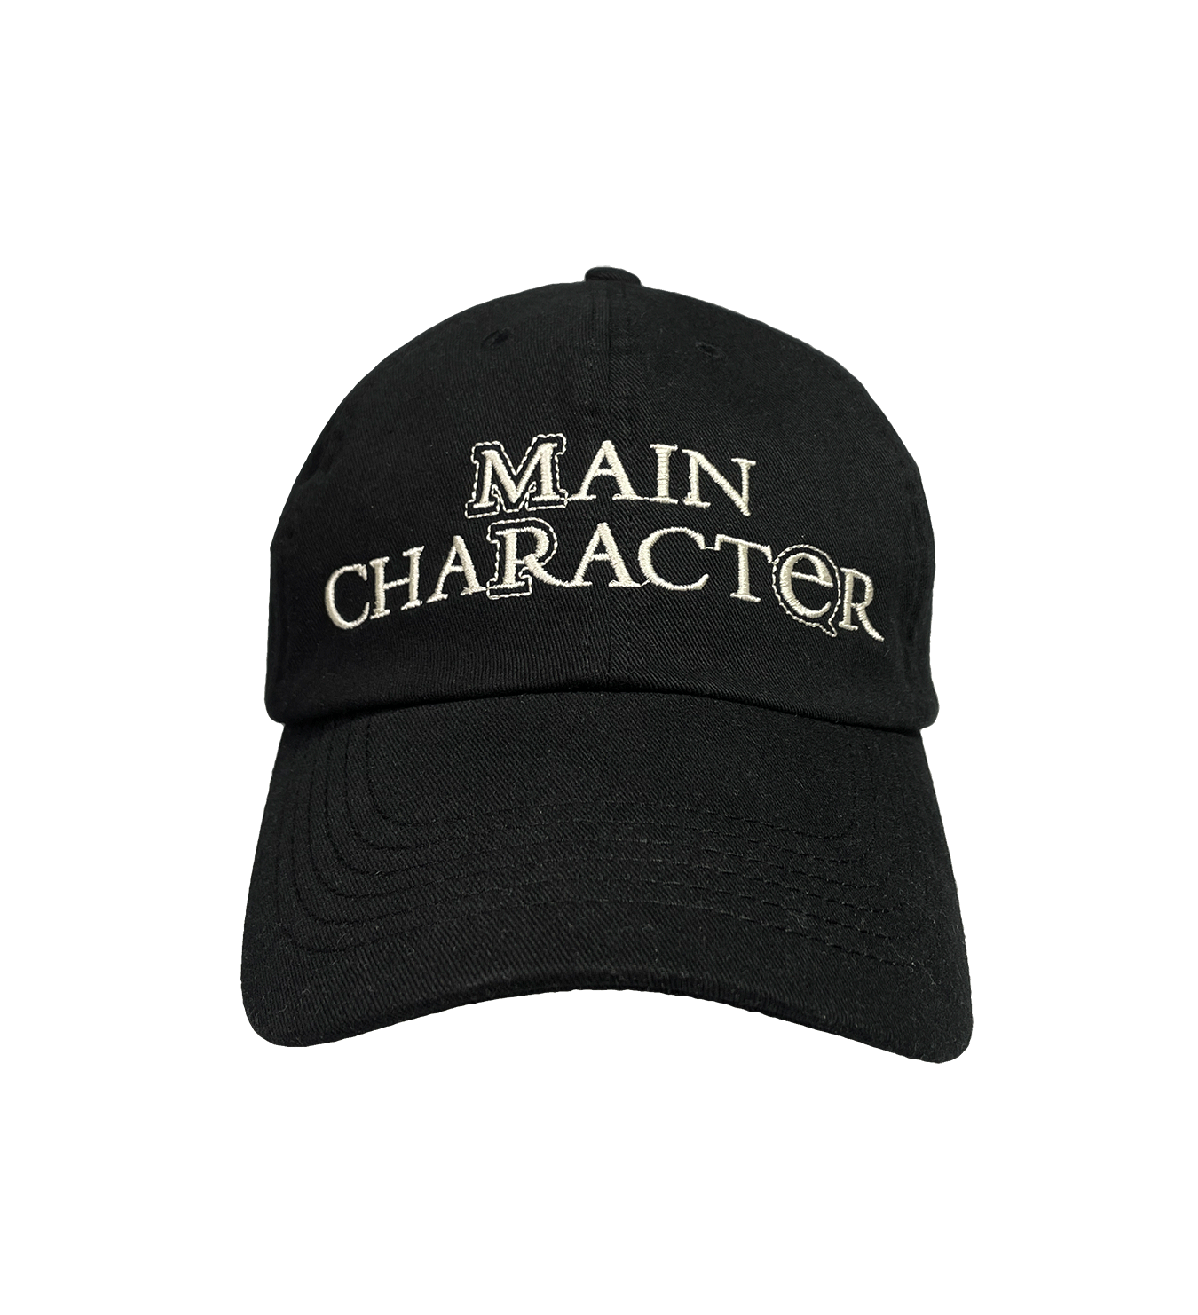 MAIN CHARACTER CAP